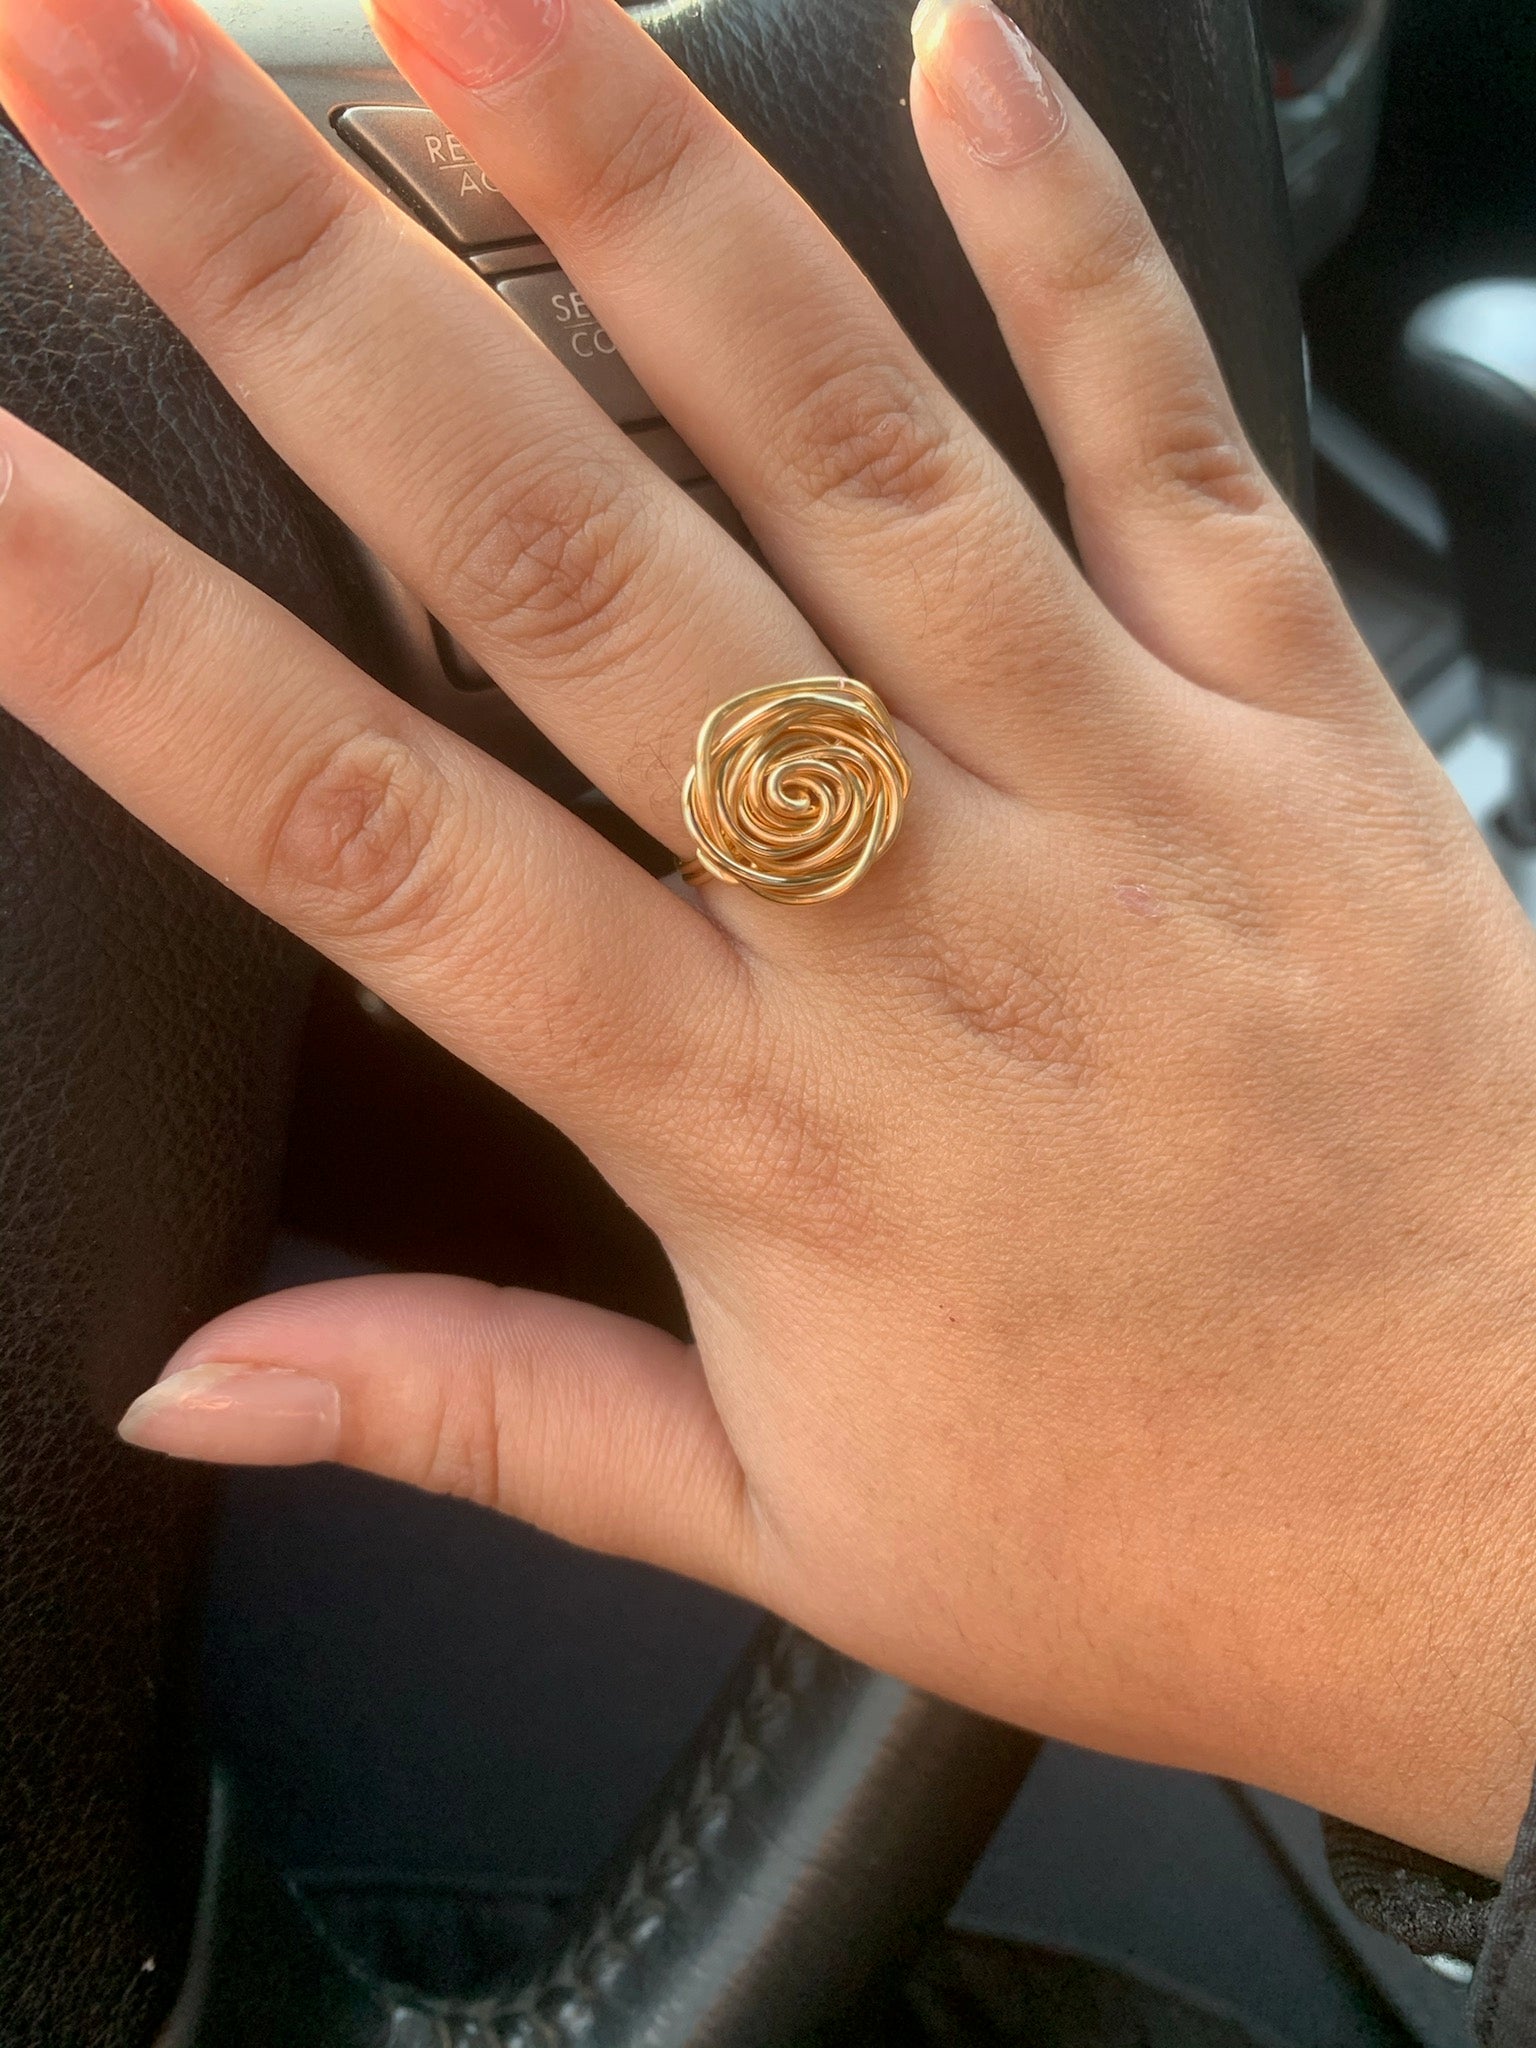 Starlit Silver Rose Ring – Meery Rings